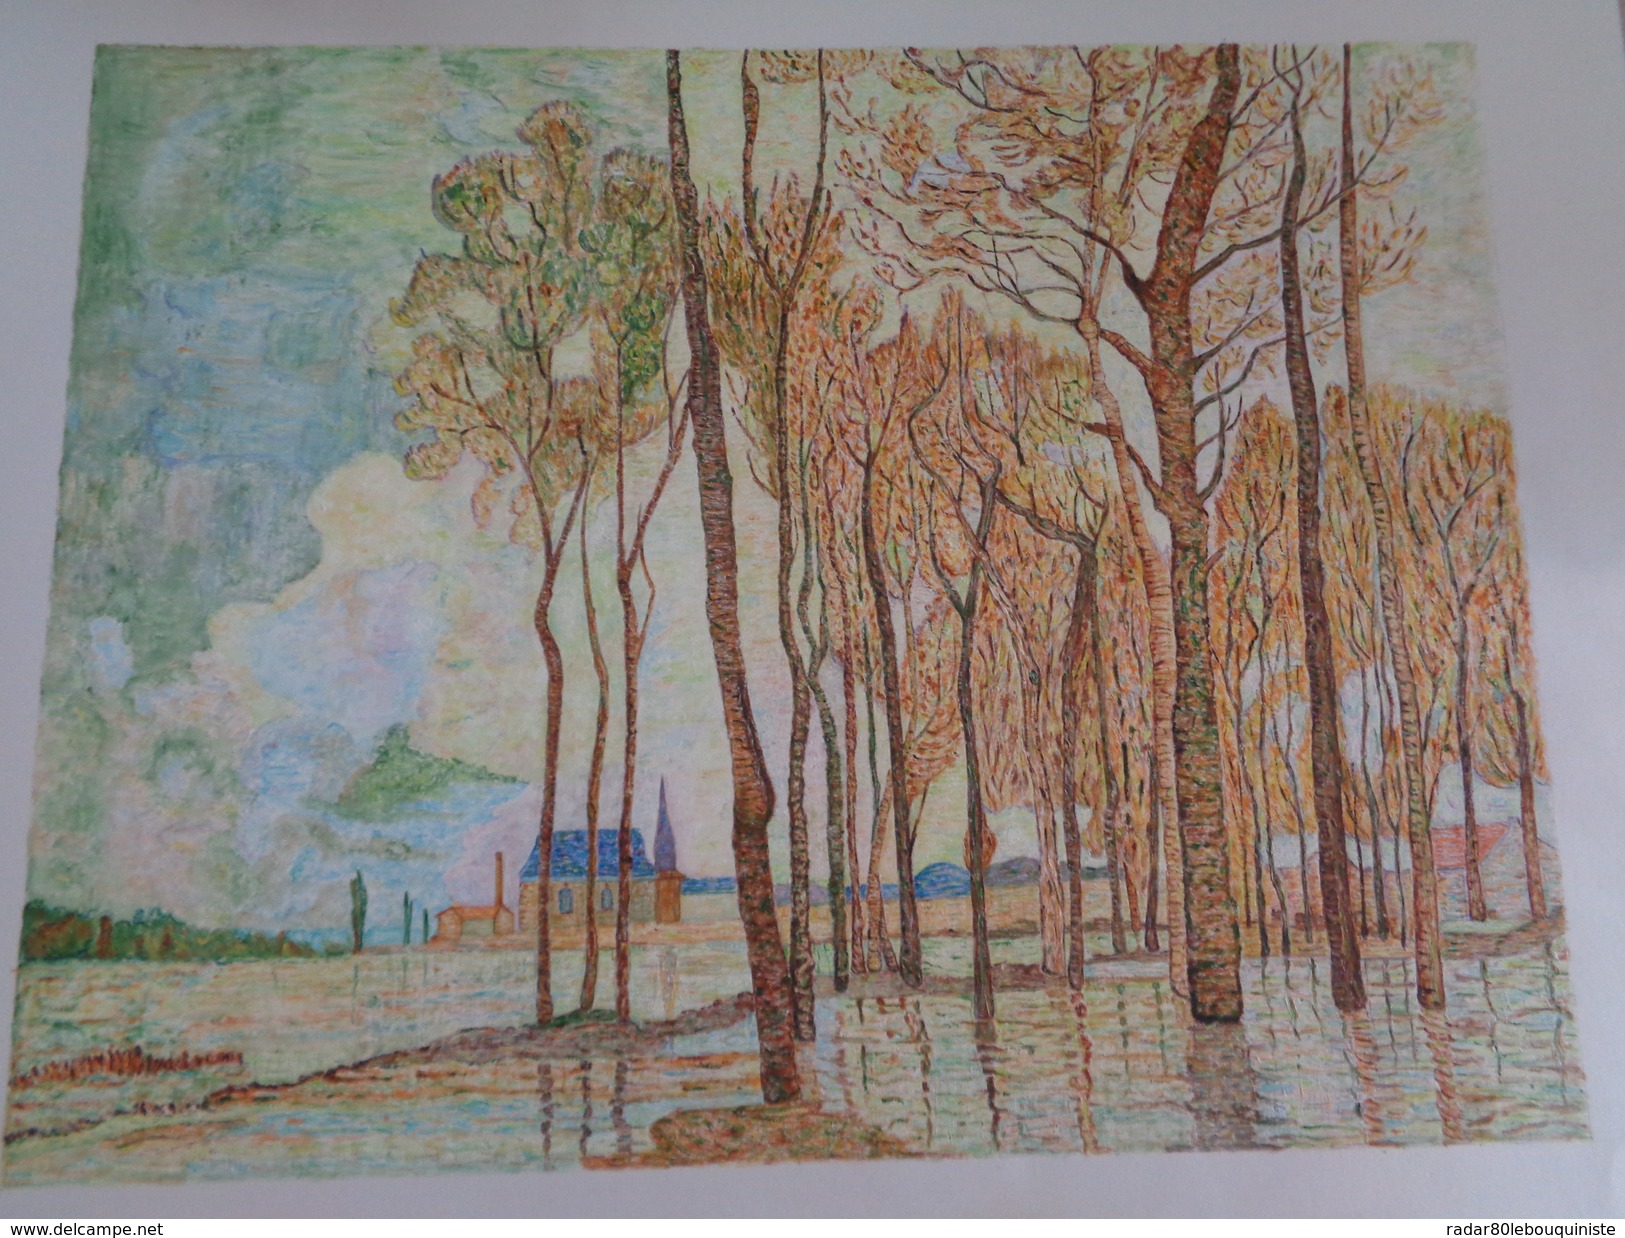 L'inondation à Argenteuil.D'après Claude Monet.feuille:570 X 434 Mm.Acrylique Sur Papier Par Debeaupuis.1975 - Acrylic Resins